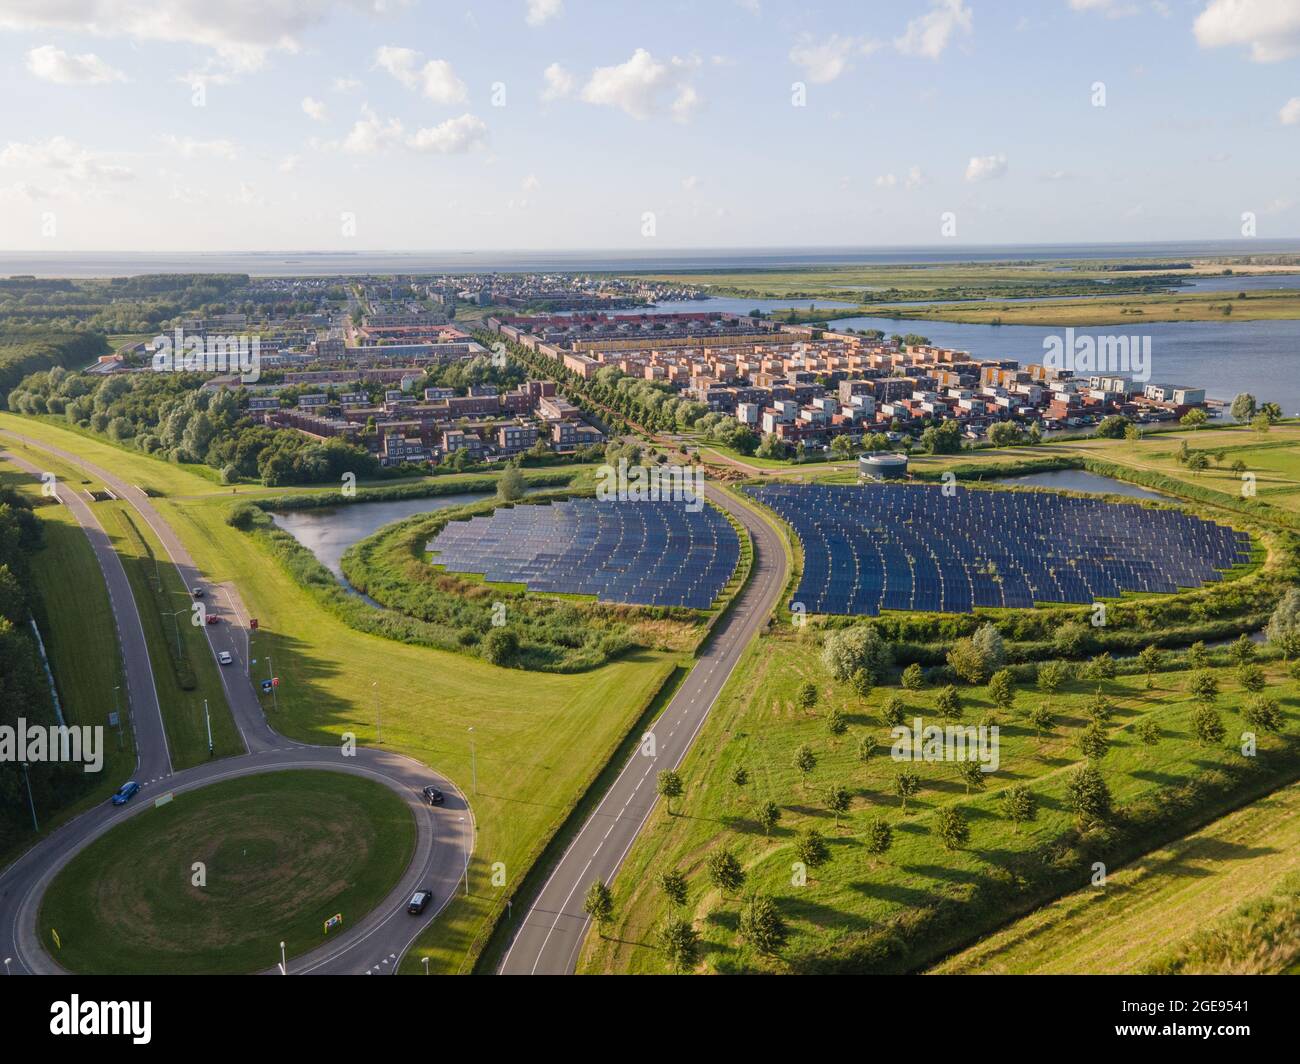 Quartier résidentiel moderne et innovant d'Almere, le long du bord de l'eau, avec champ de panneaux solaires. Pays-Bas, Flevoland. Banque D'Images